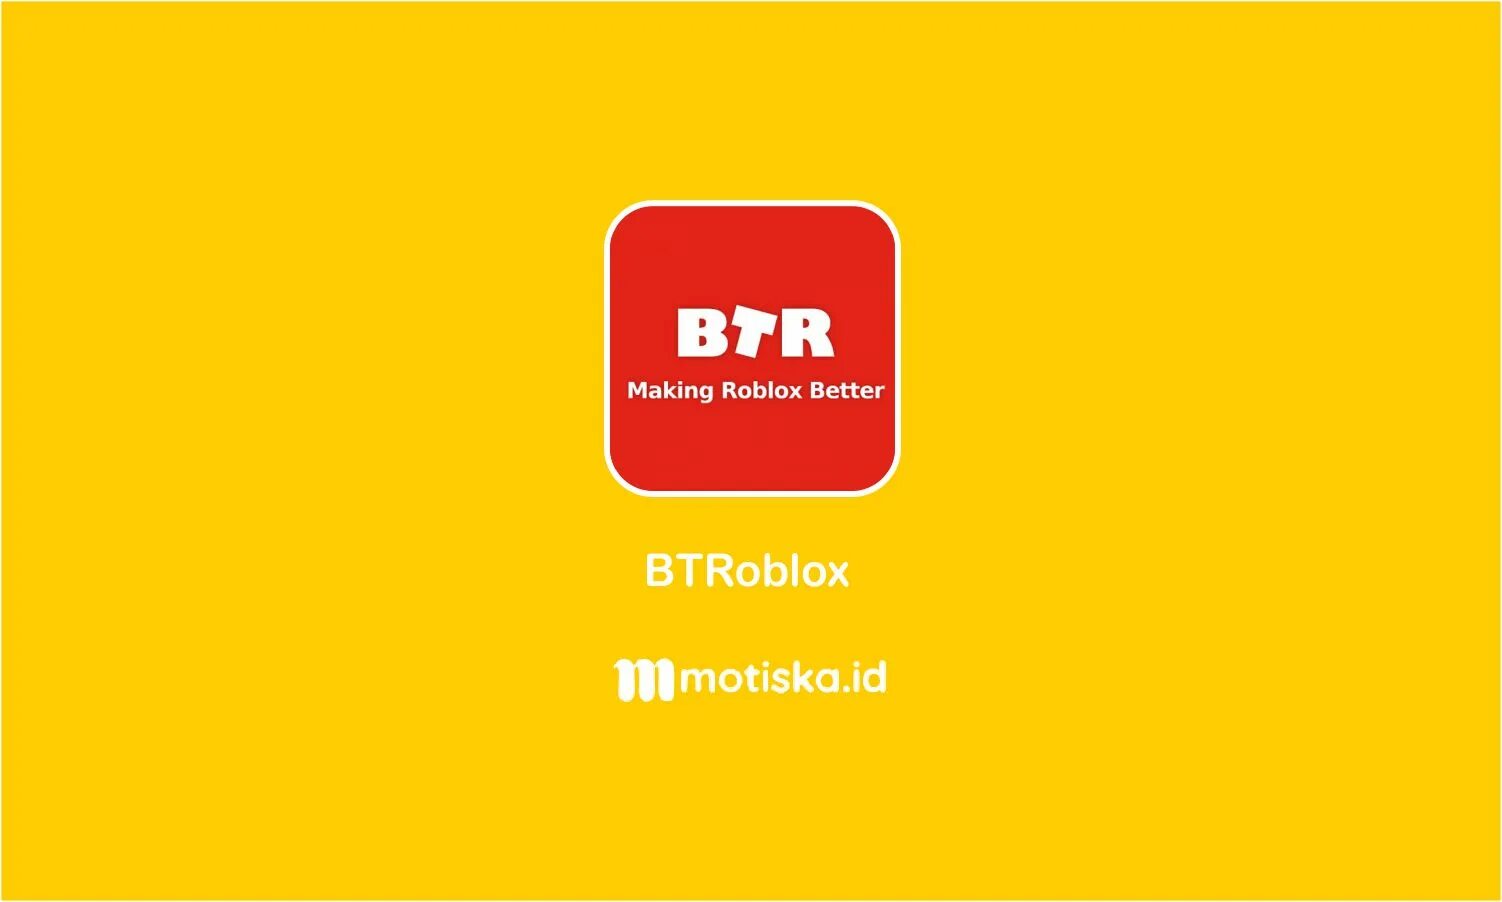 Roblox btroblox. BTROBLOX. БТР РОБЛОКС. BTROBLOX - making Roblox better. BTROBLOX download.